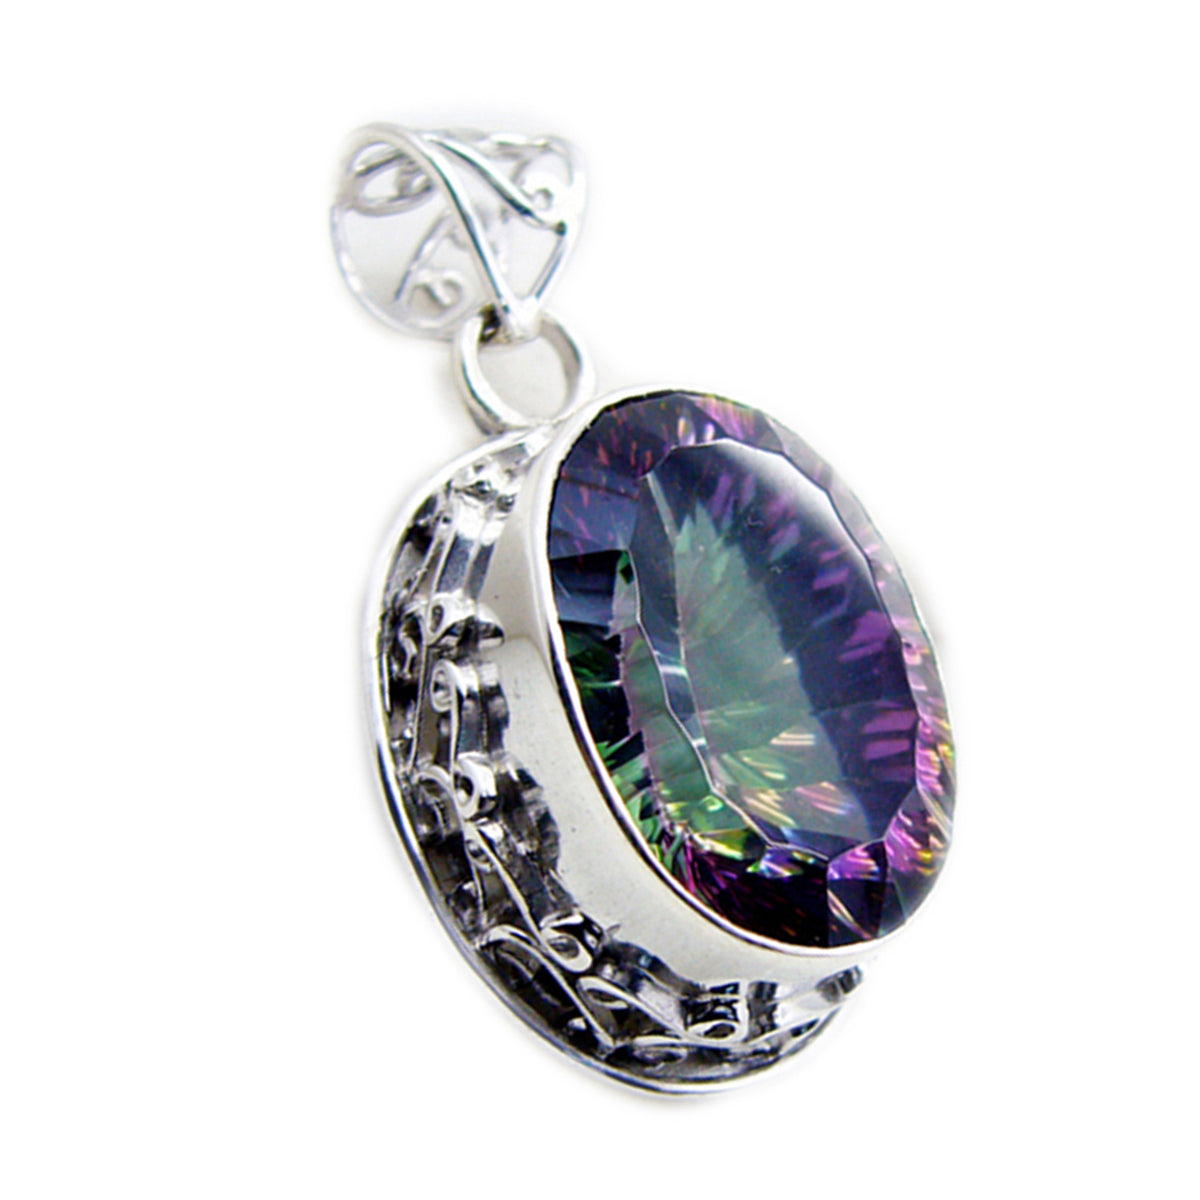 Riyo ravissantes pierres précieuses ovales à facettes multicolores quartz mystique pendentif en argent massif cadeau pour mariage